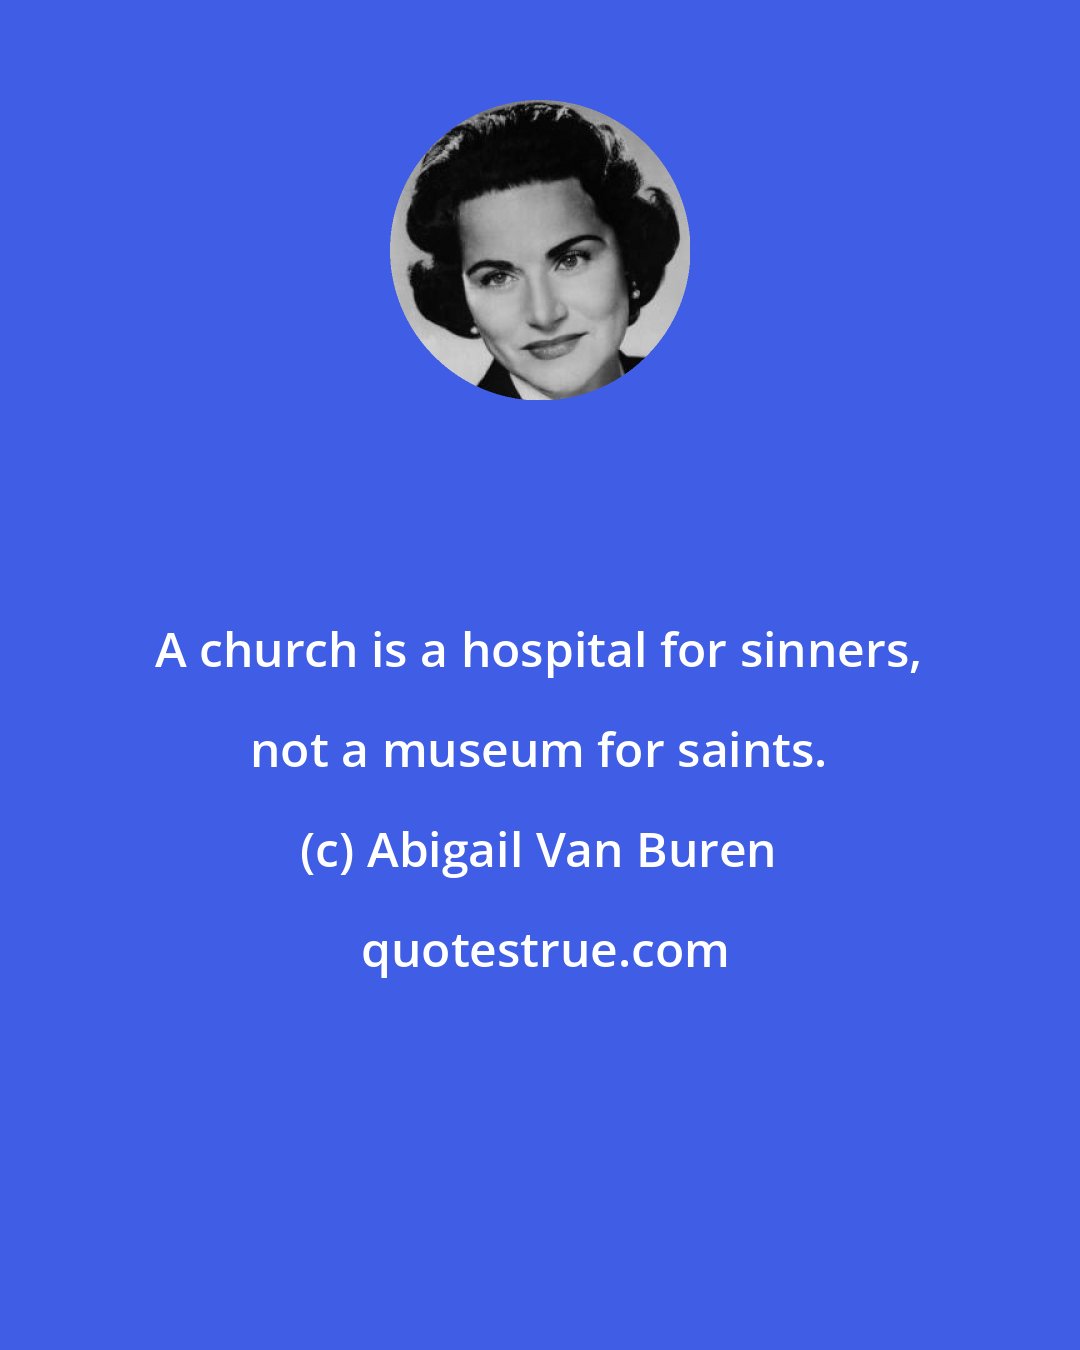 Abigail Van Buren: A church is a hospital for sinners, not a museum for saints.